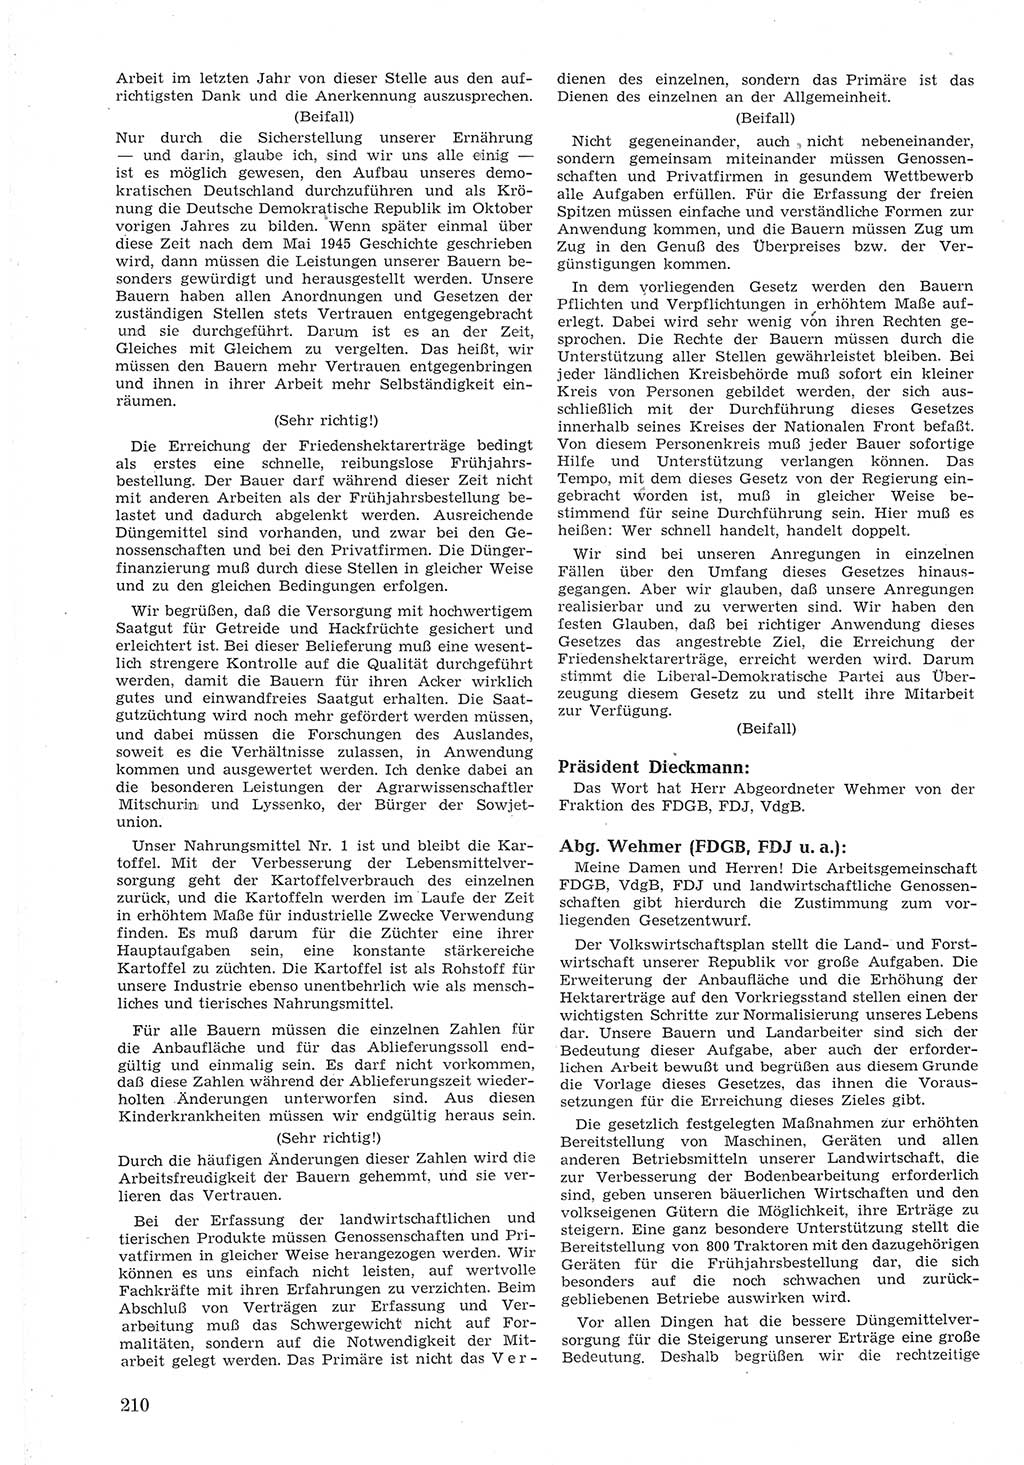 Provisorische Volkskammer (VK) der Deutschen Demokratischen Republik (DDR) 1949-1950, Dokument 222 (Prov. VK DDR 1949-1950, Dok. 222)